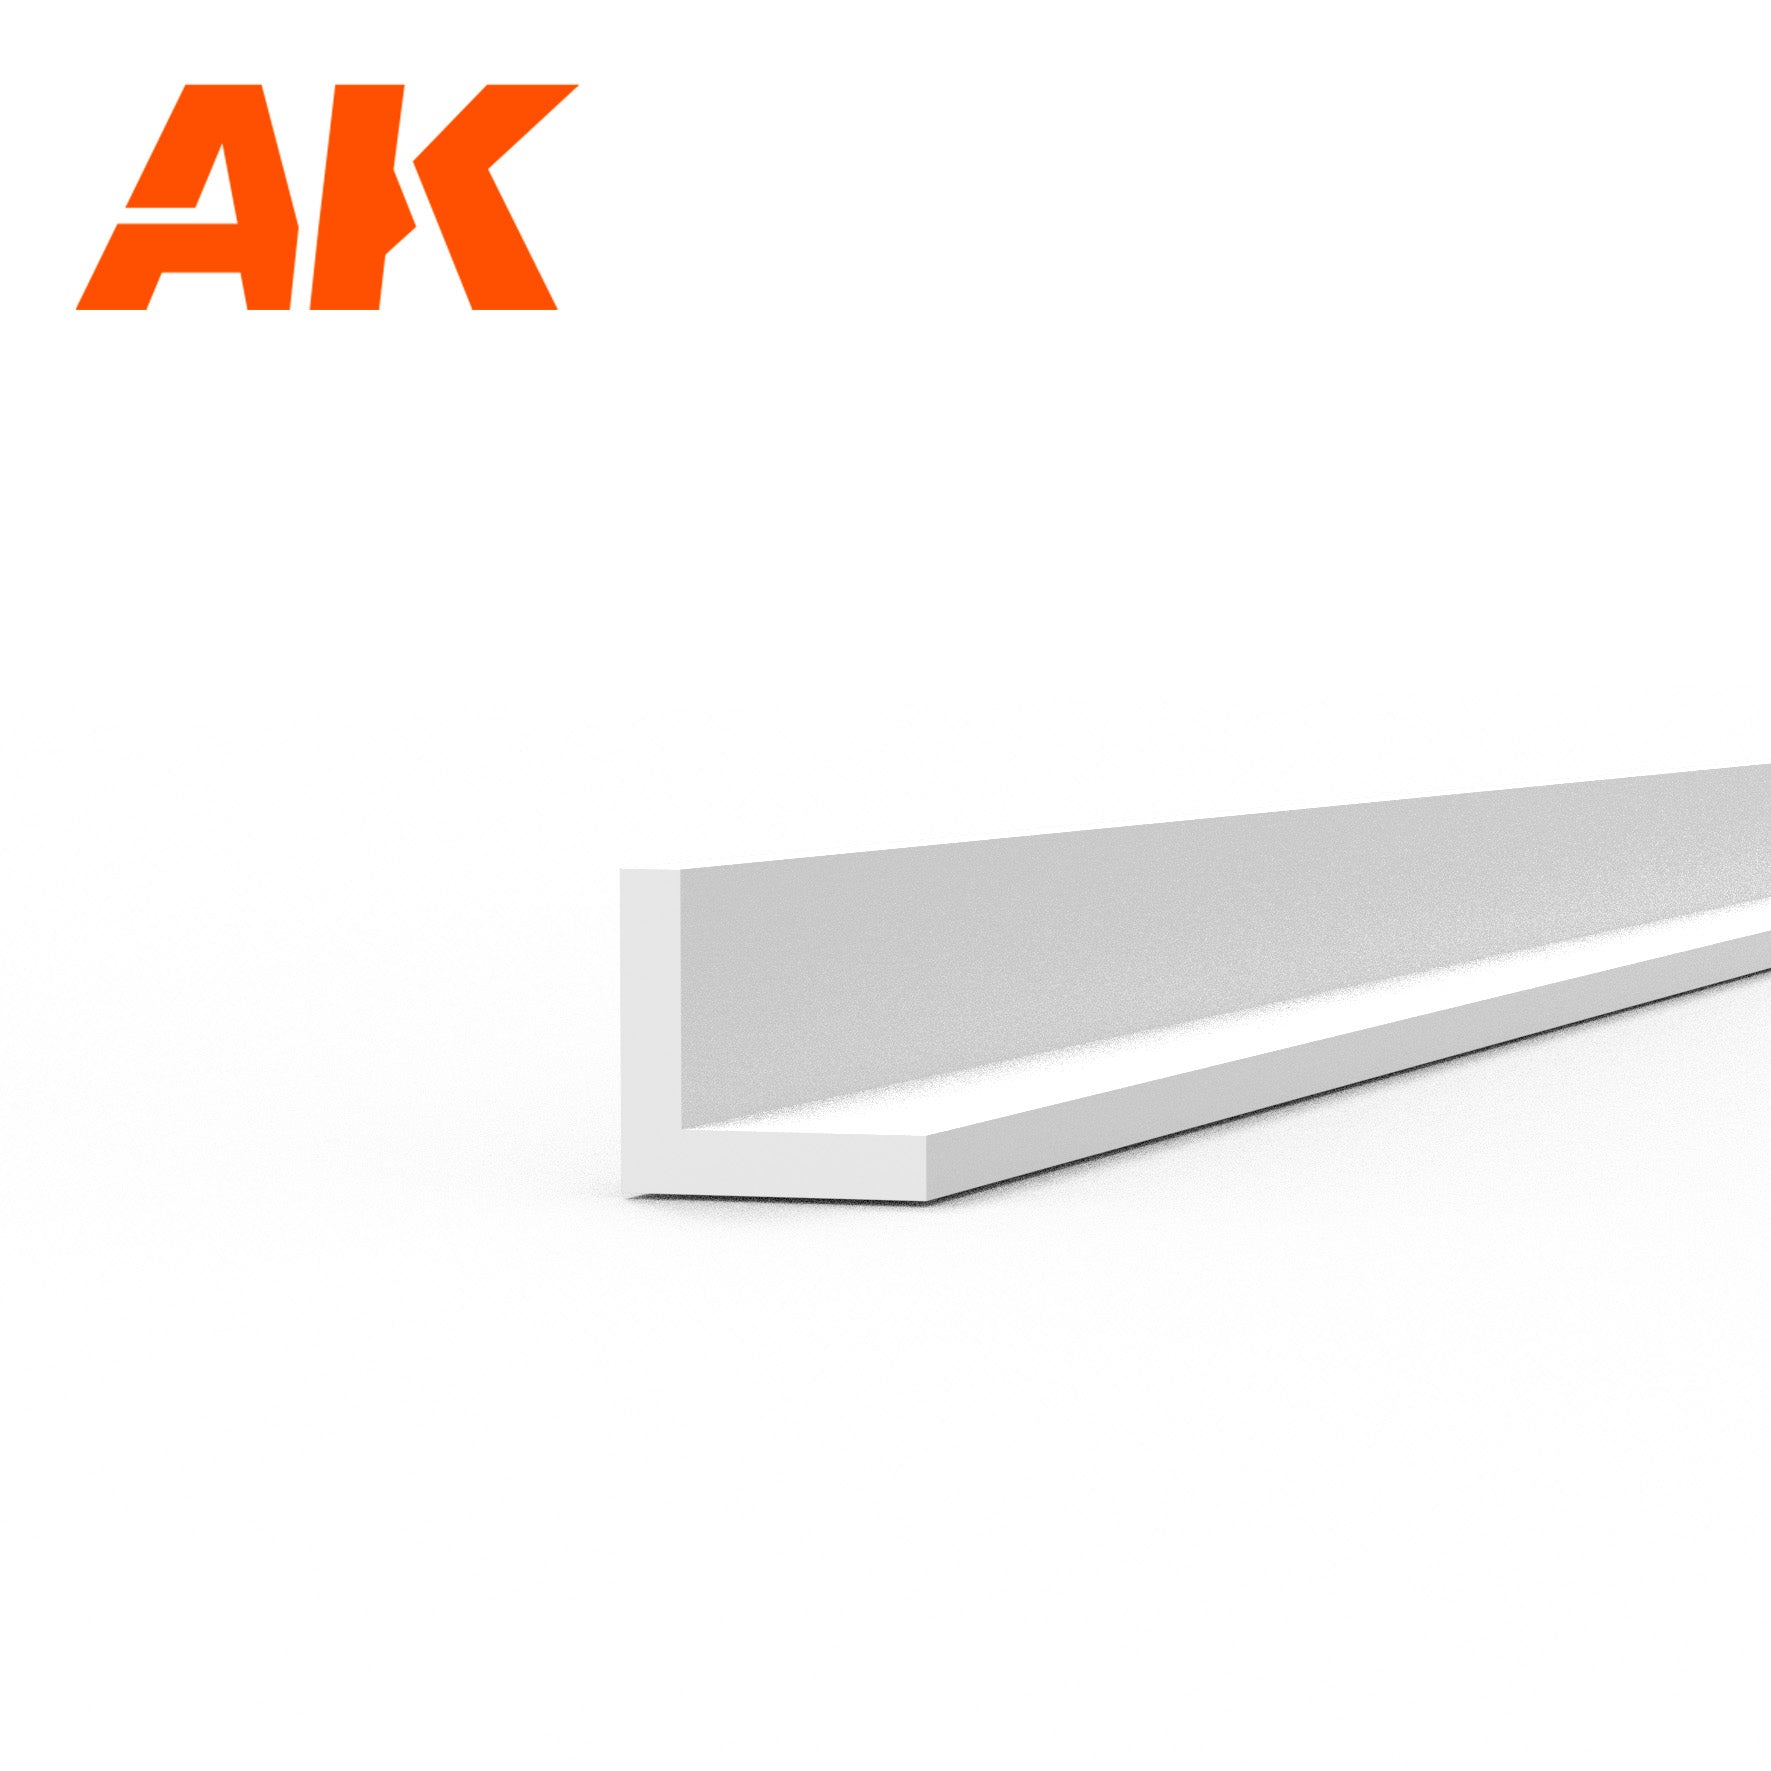 AK6559 -  Angle - Styrene Strip - 1.50 x 1.50 x 350mm - (4 units)